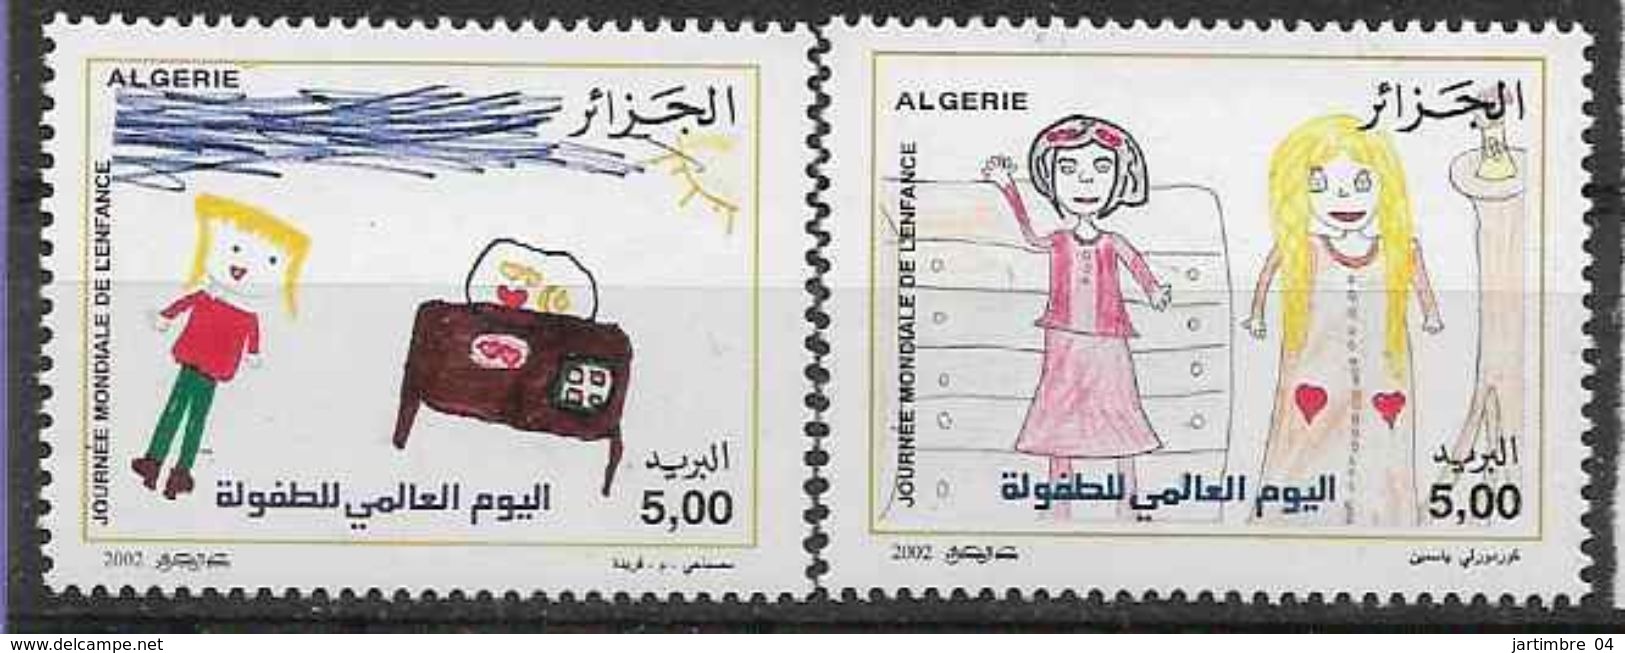 2002 ALGERIE 1311-12** Dessins D'enfants - Algérie (1962-...)